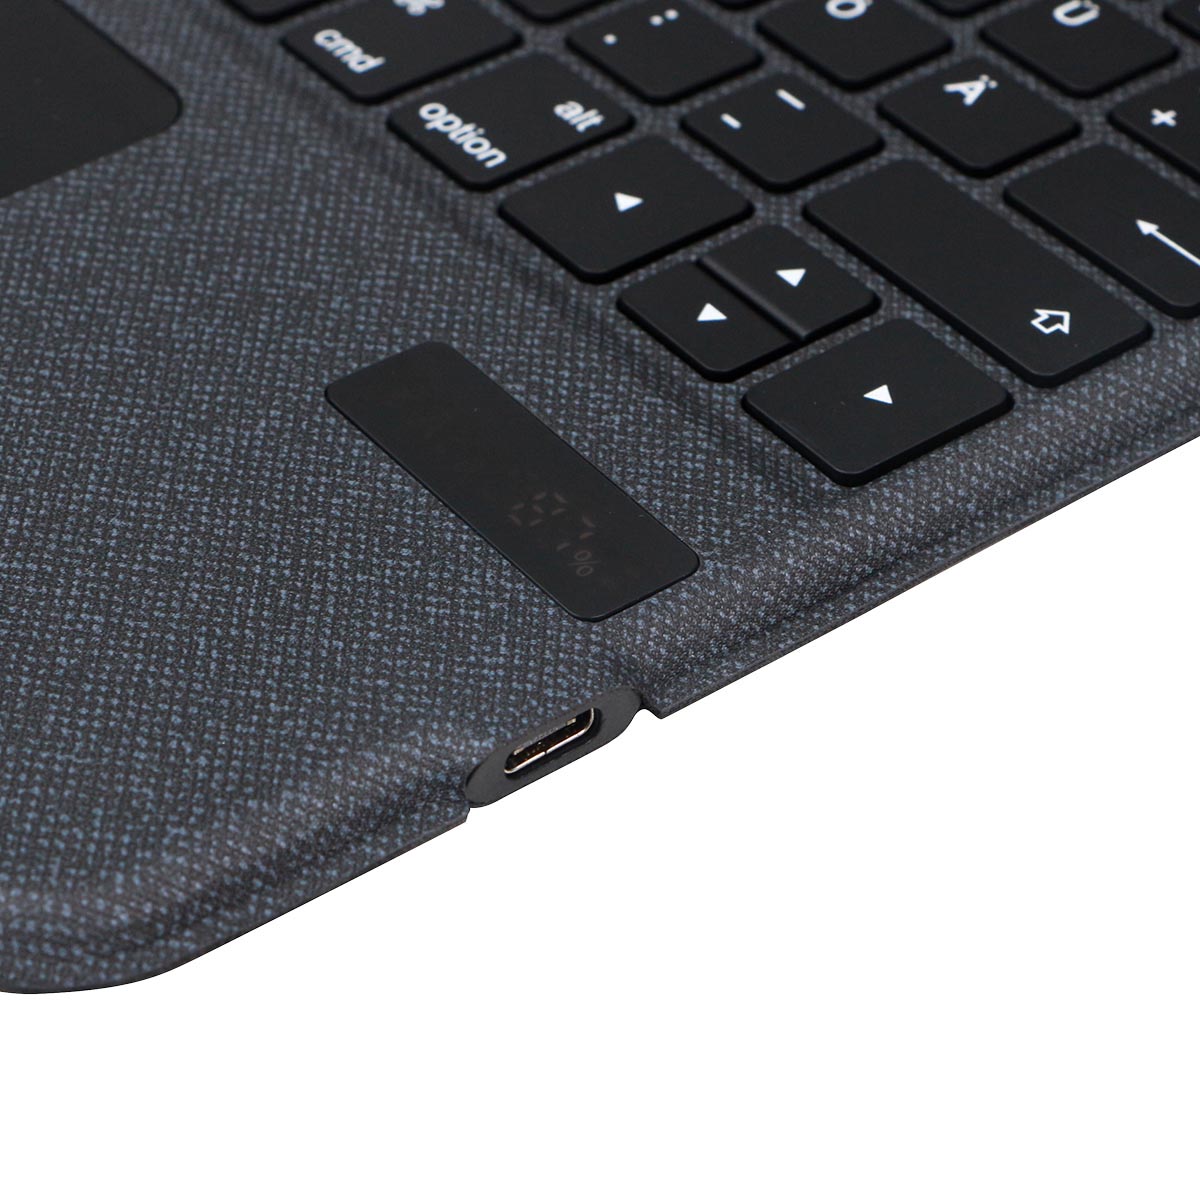 Nouveau design clavier Bluetooth Folio pour iPad avec pavé tactile et fente pour stylo universelle étui pour clavier iPad